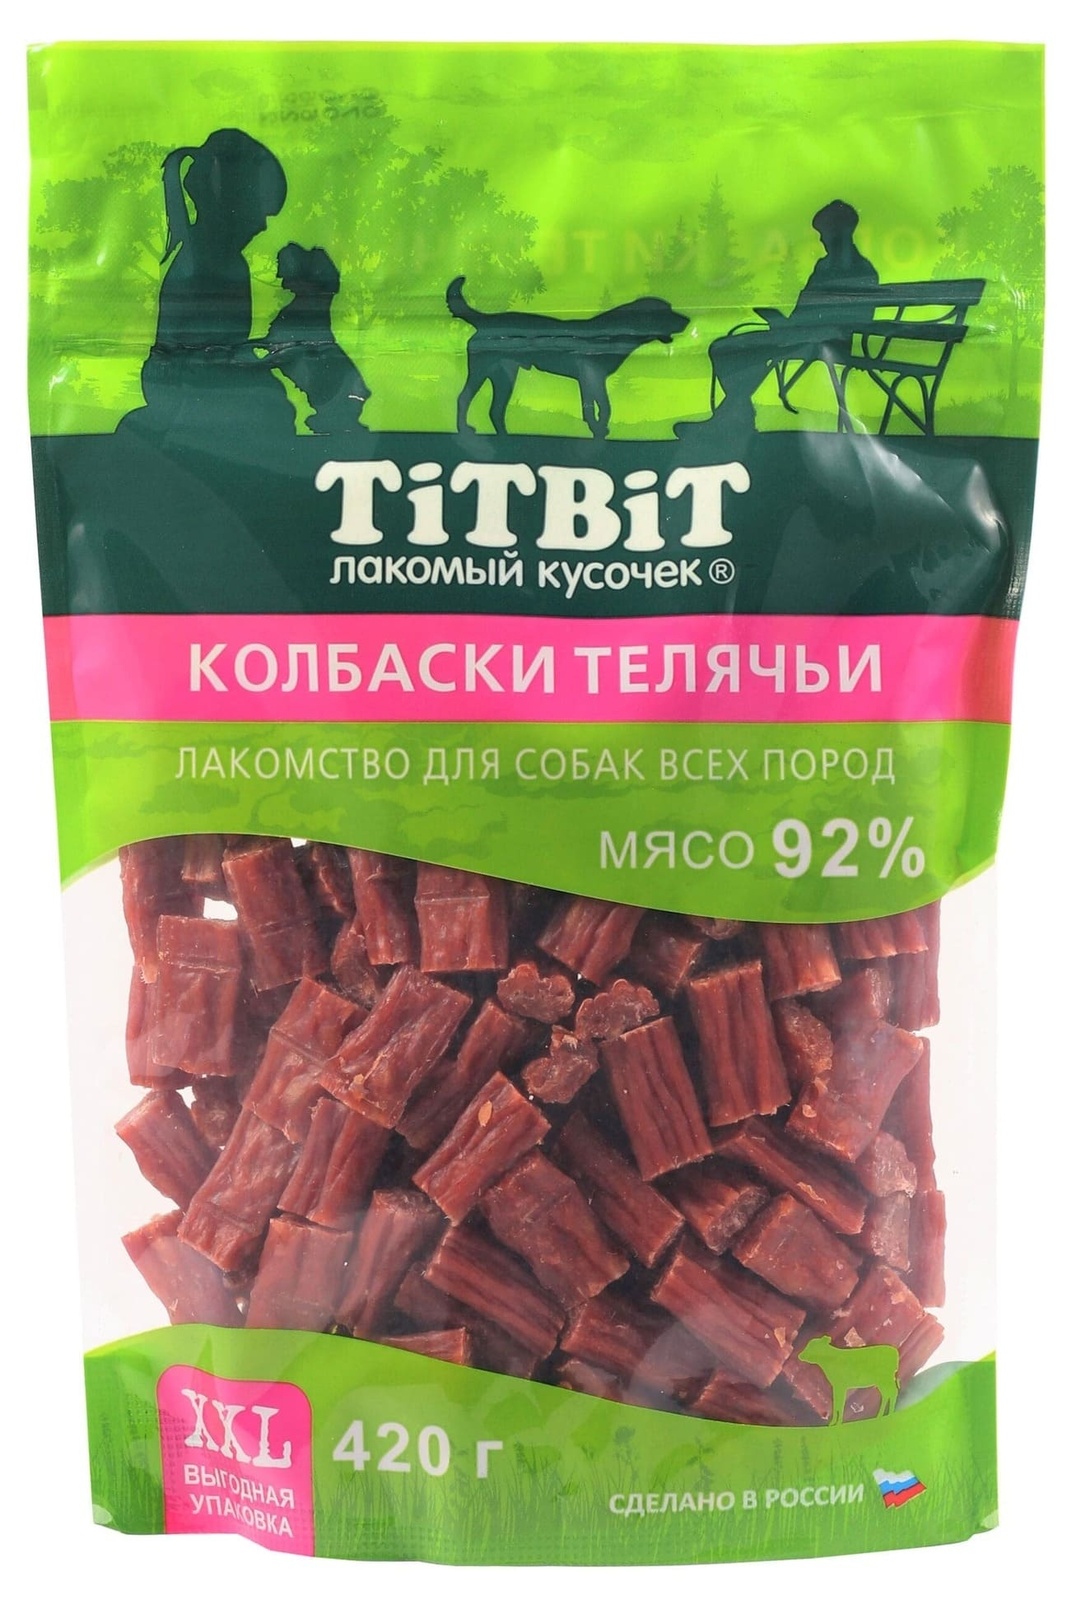 TiTBiT TiTBiT колбаски телячьи для собак всех пород, выгодная упаковка XXL (420 г) лакомство для собак titbit колбаски телячьи 420г xxl выгодная упаковка